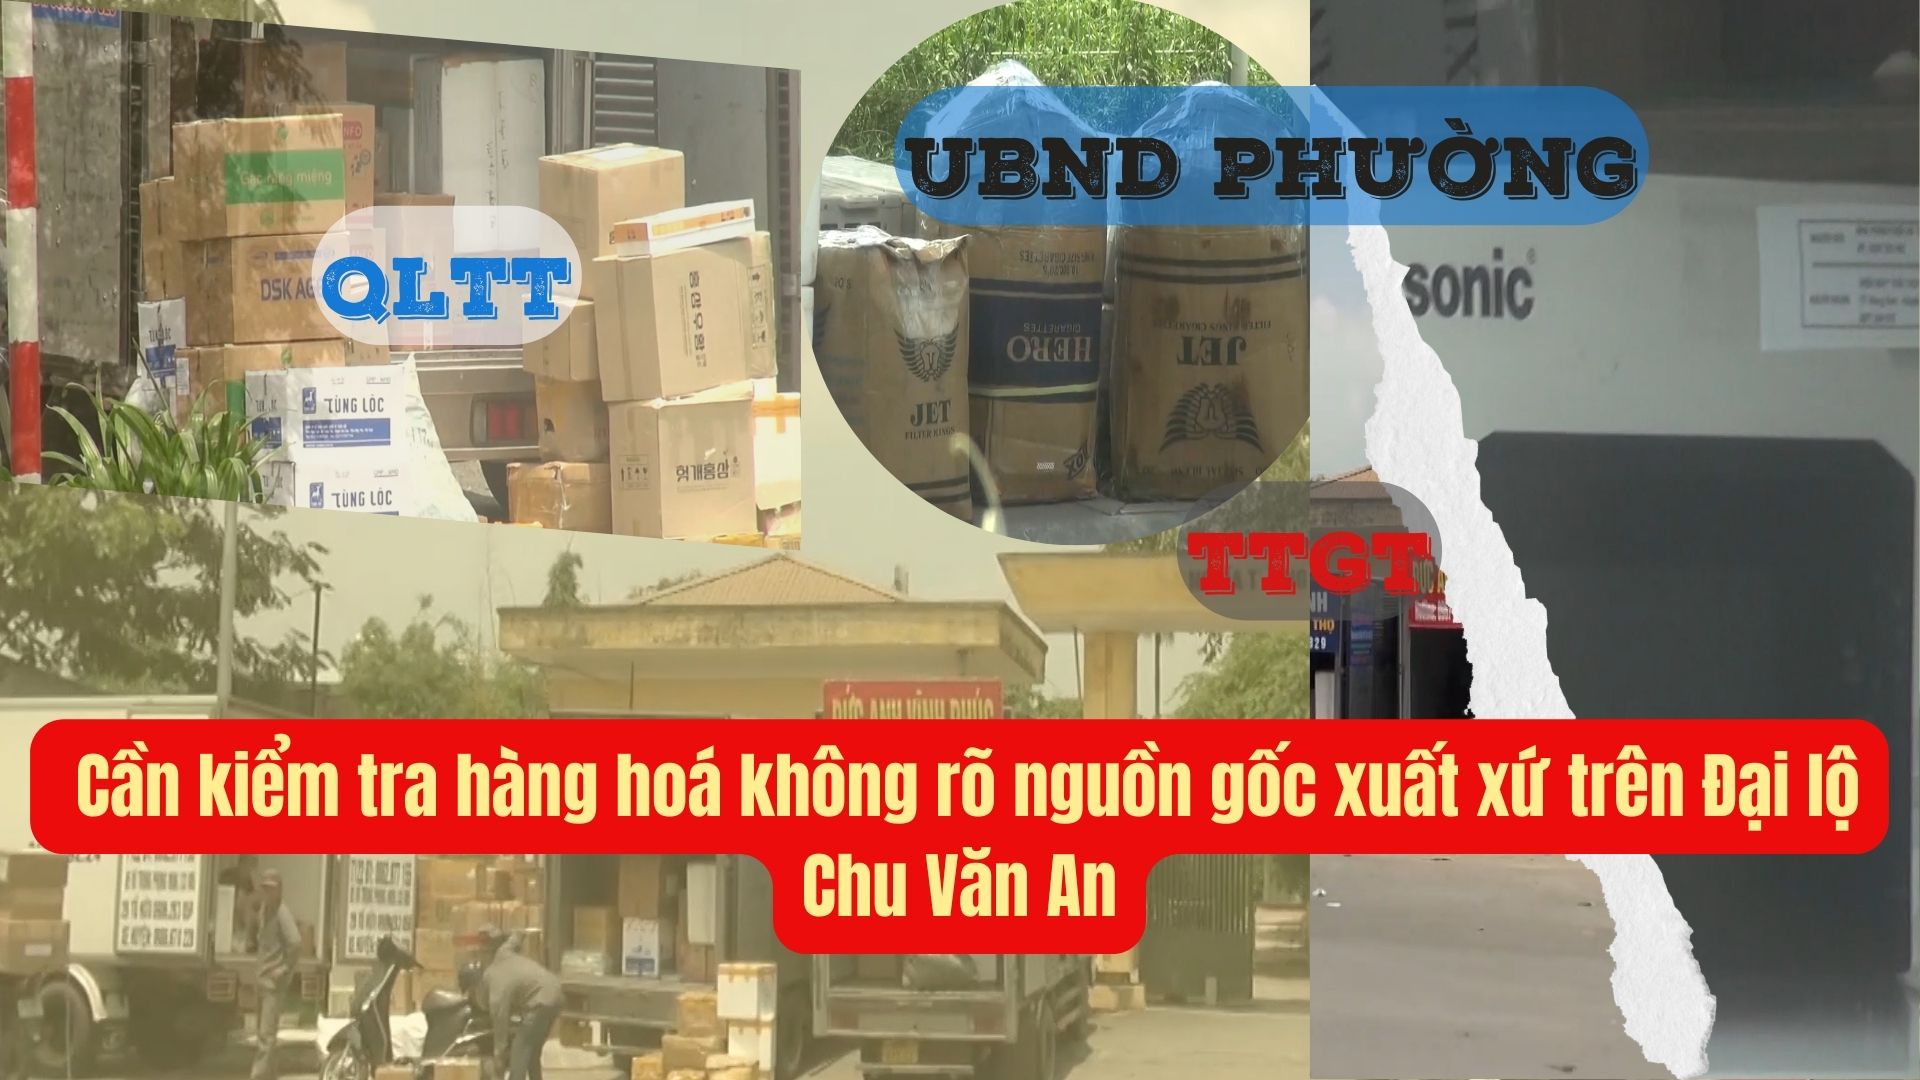 Hà Nội: Cần kiểm tra hàng hoá không rõ nguồn gốc xuất xứ trên đại lộ Chu Văn An